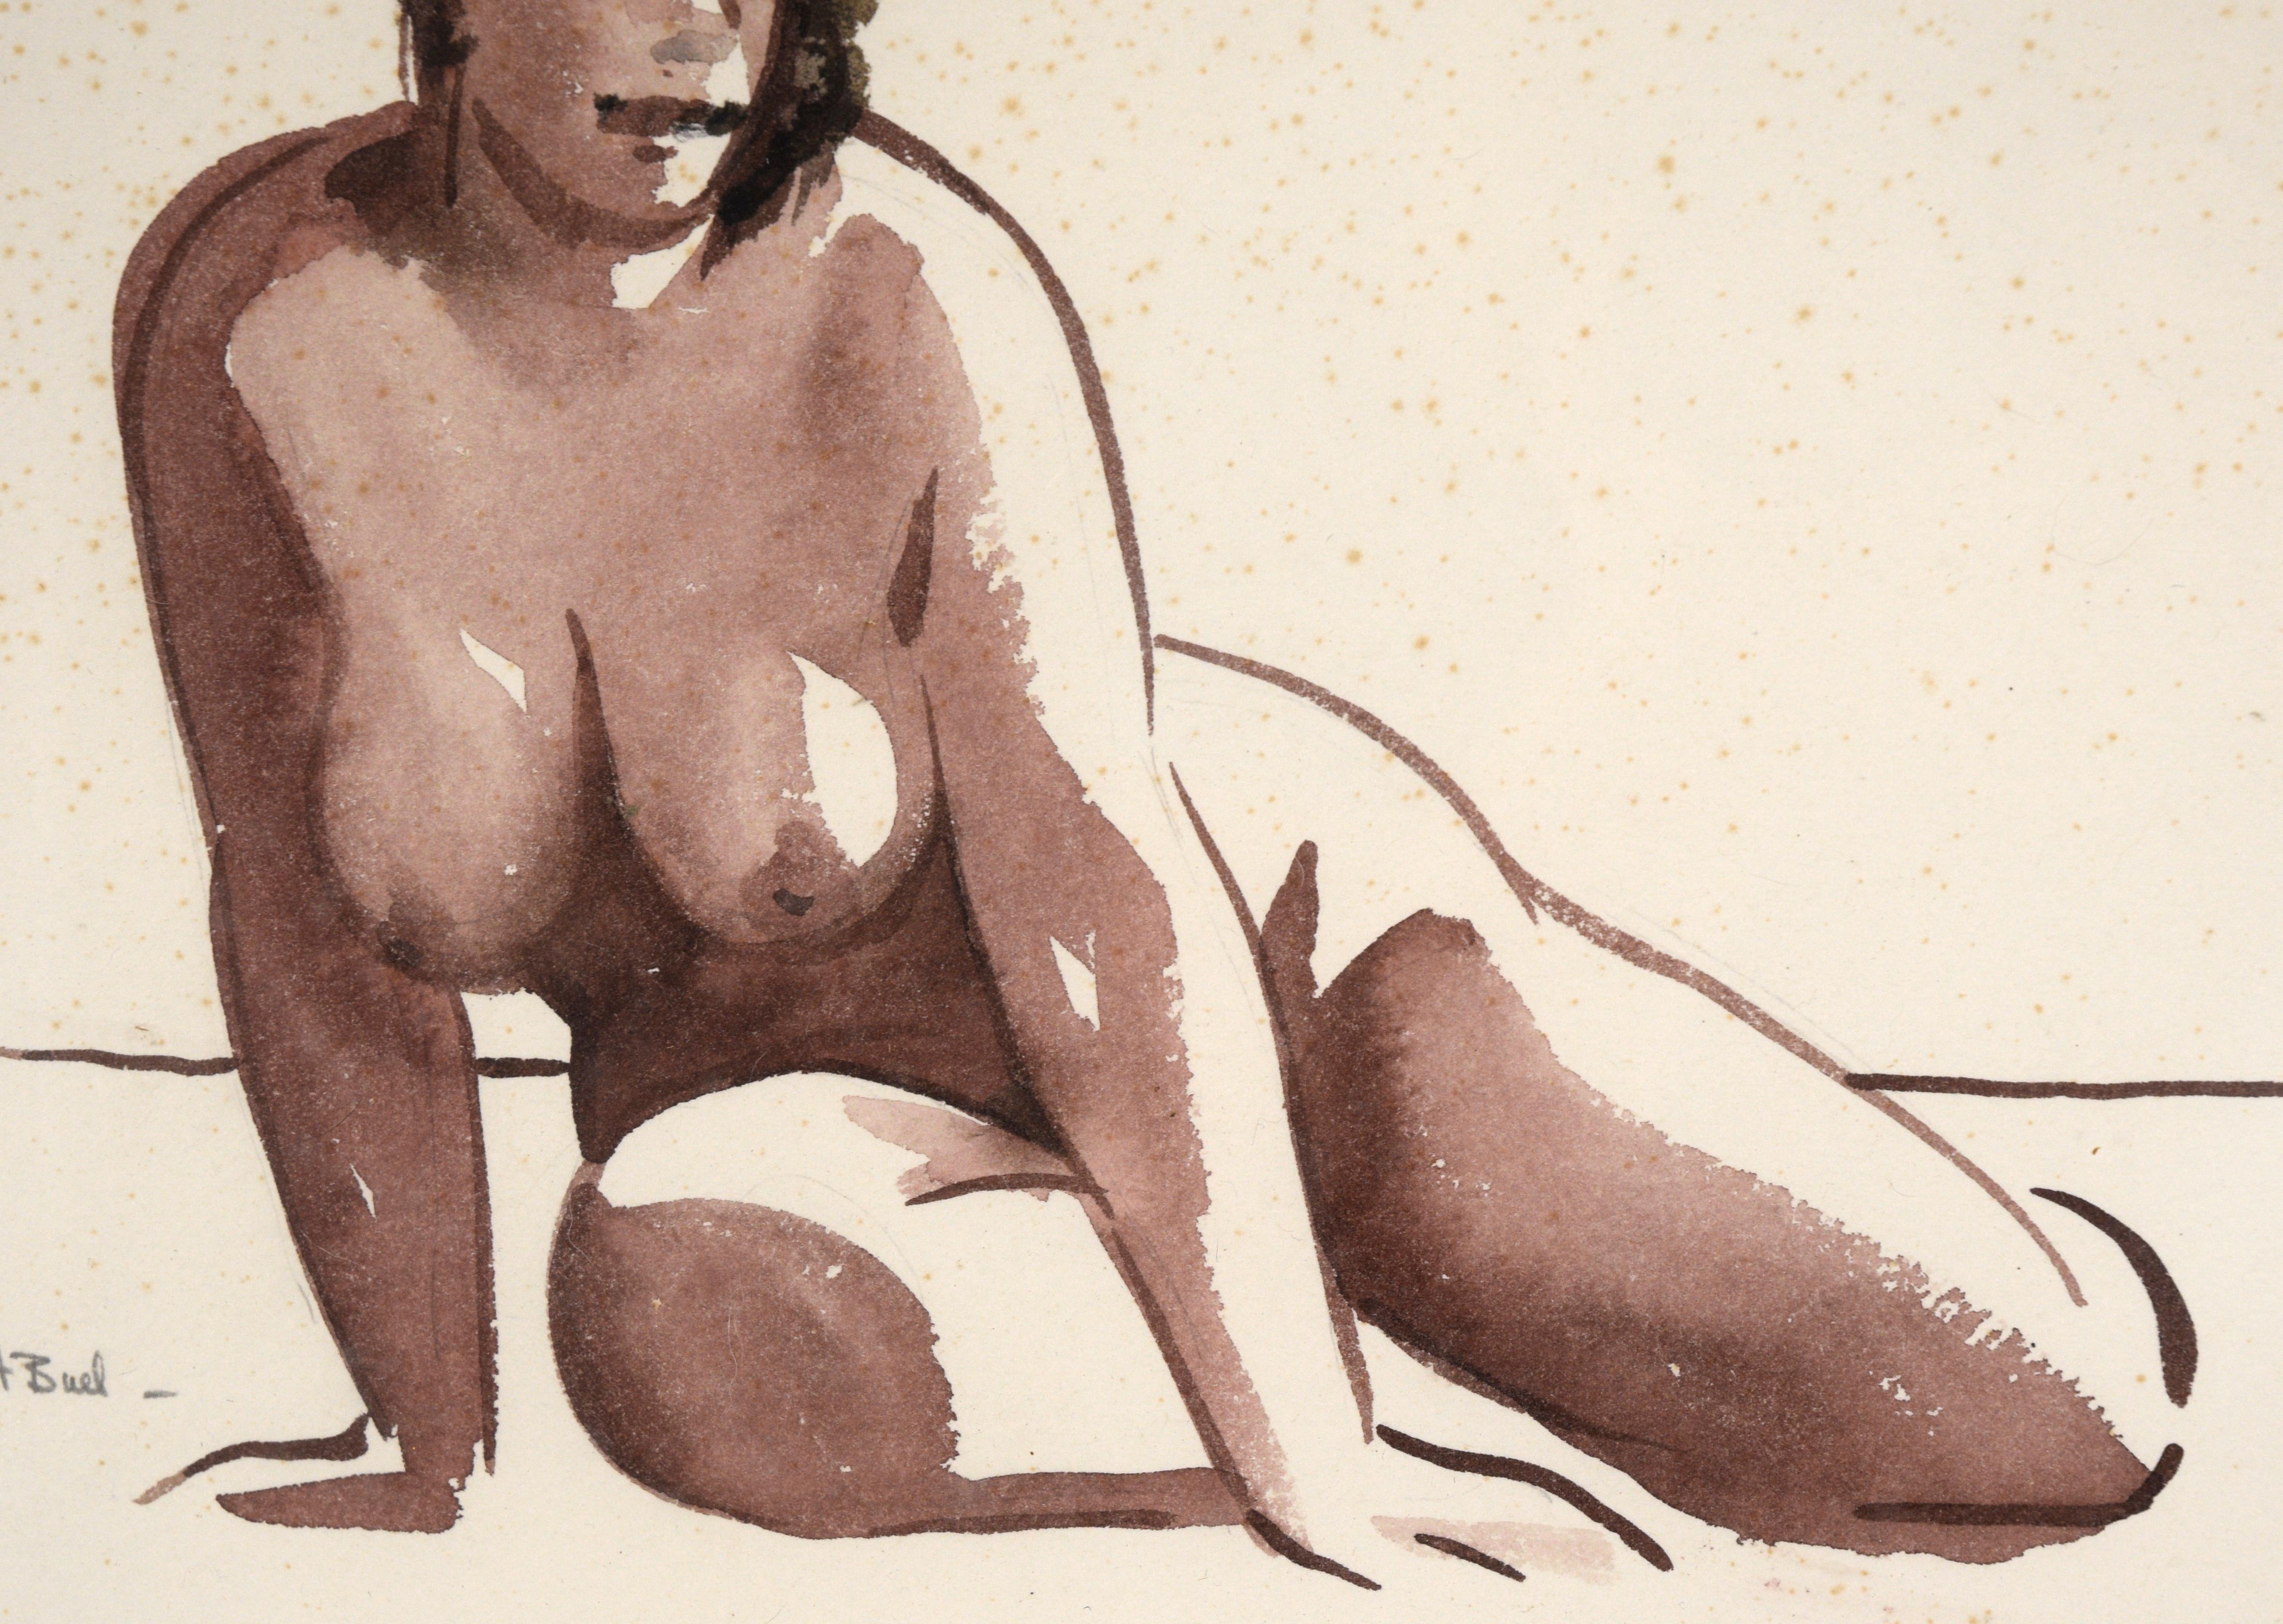 Liegender Akt – Frauenfigurenstudie der figurativen Bewegung der Bay Area aus der Mitte des Jahrhunderts (Beige), Figurative Art, von Hubert Buel